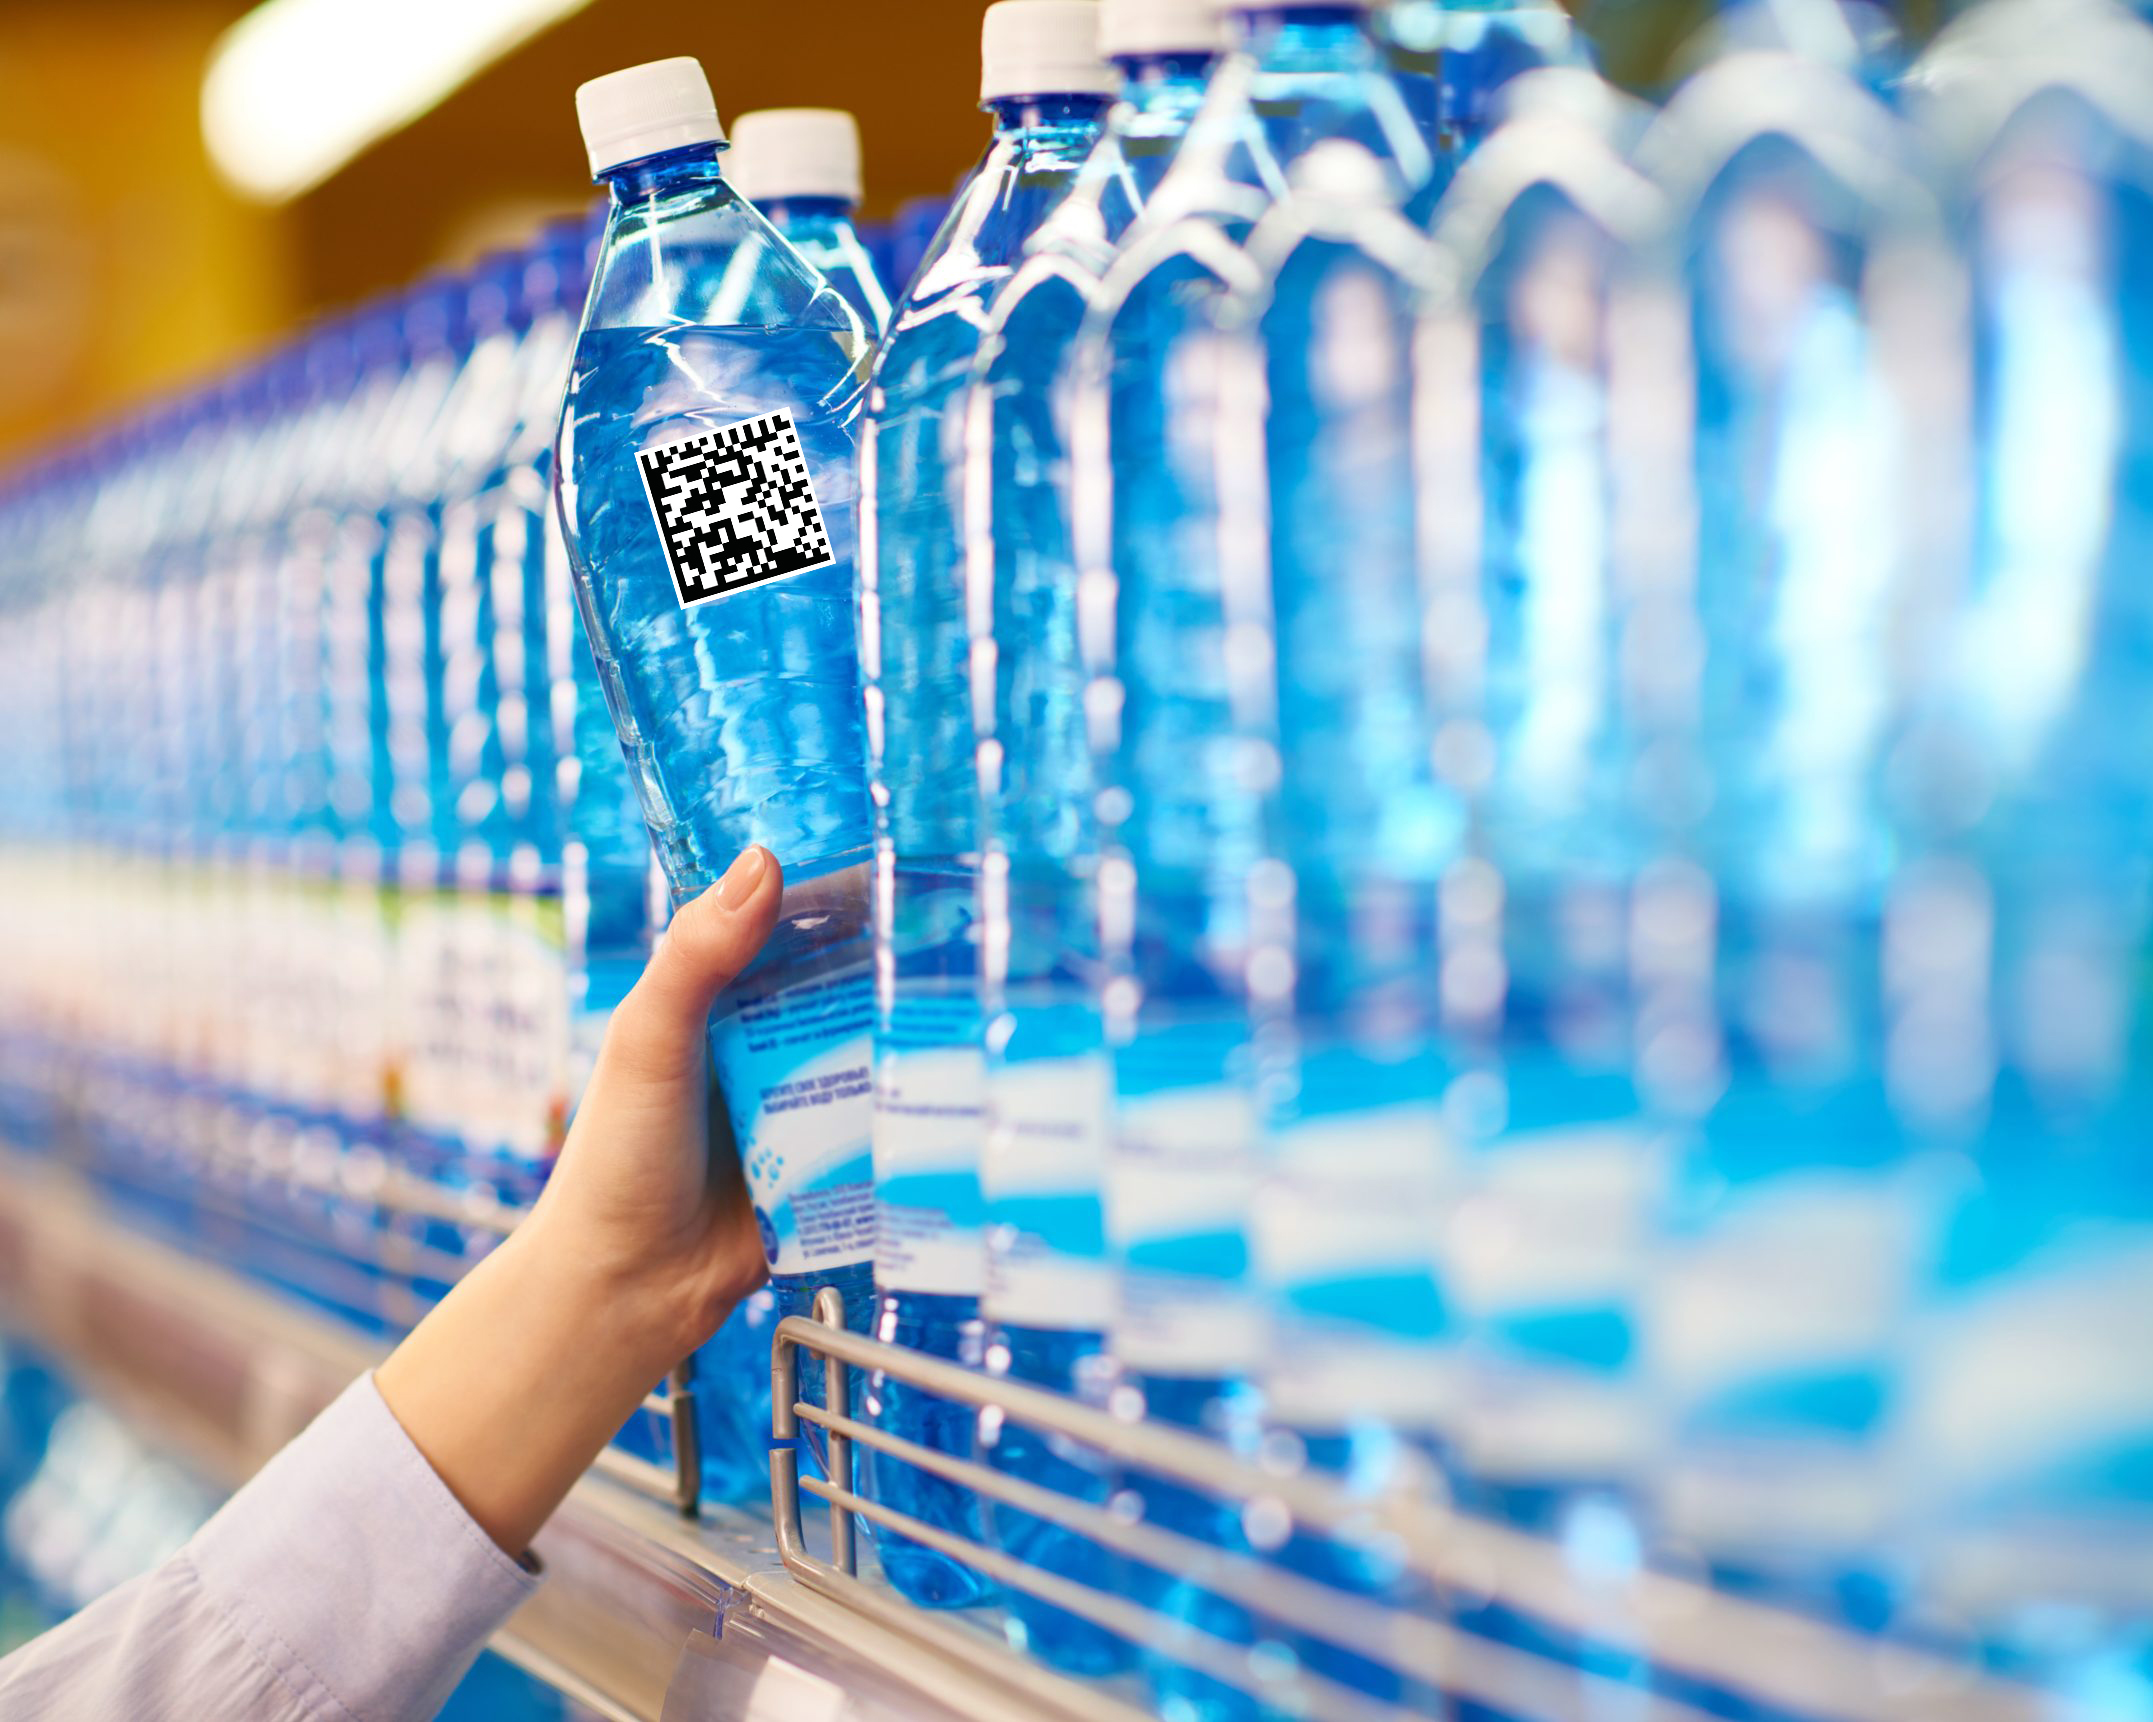 Питьевая вода на судне. Вода питьевая бутилированная. Бутилированная минеральная вода. Бутылка для воды. Пластиковые бутылки в магазине.